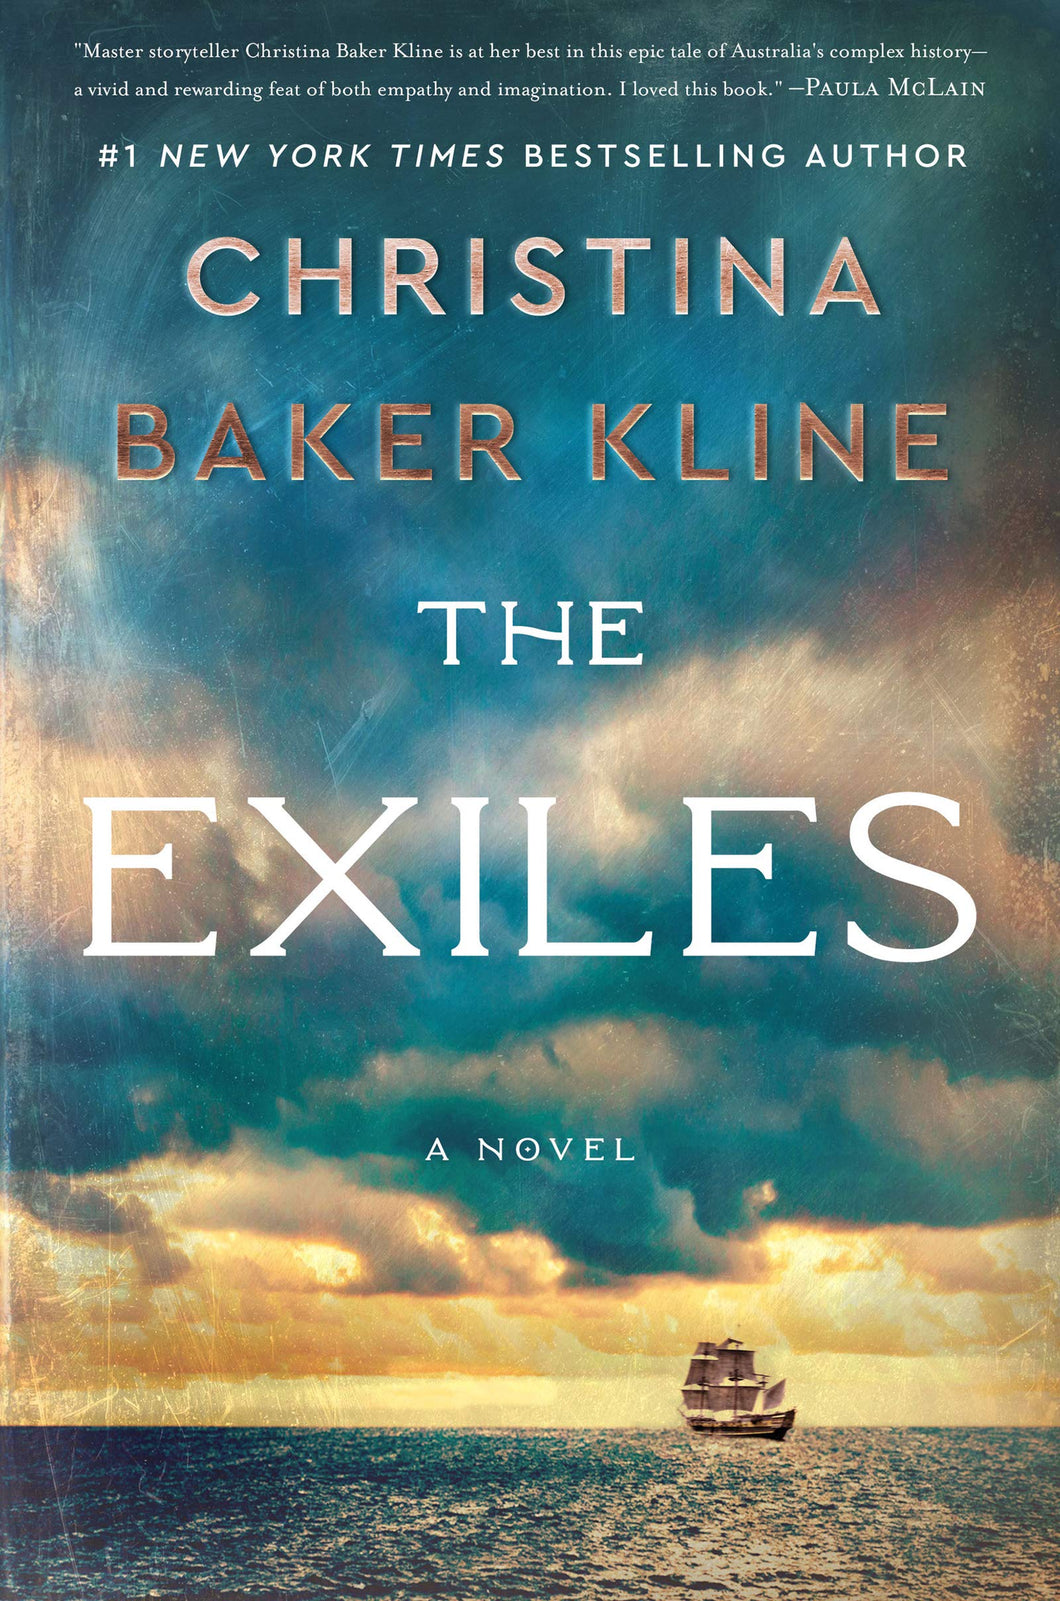 The Exiles: A Novel